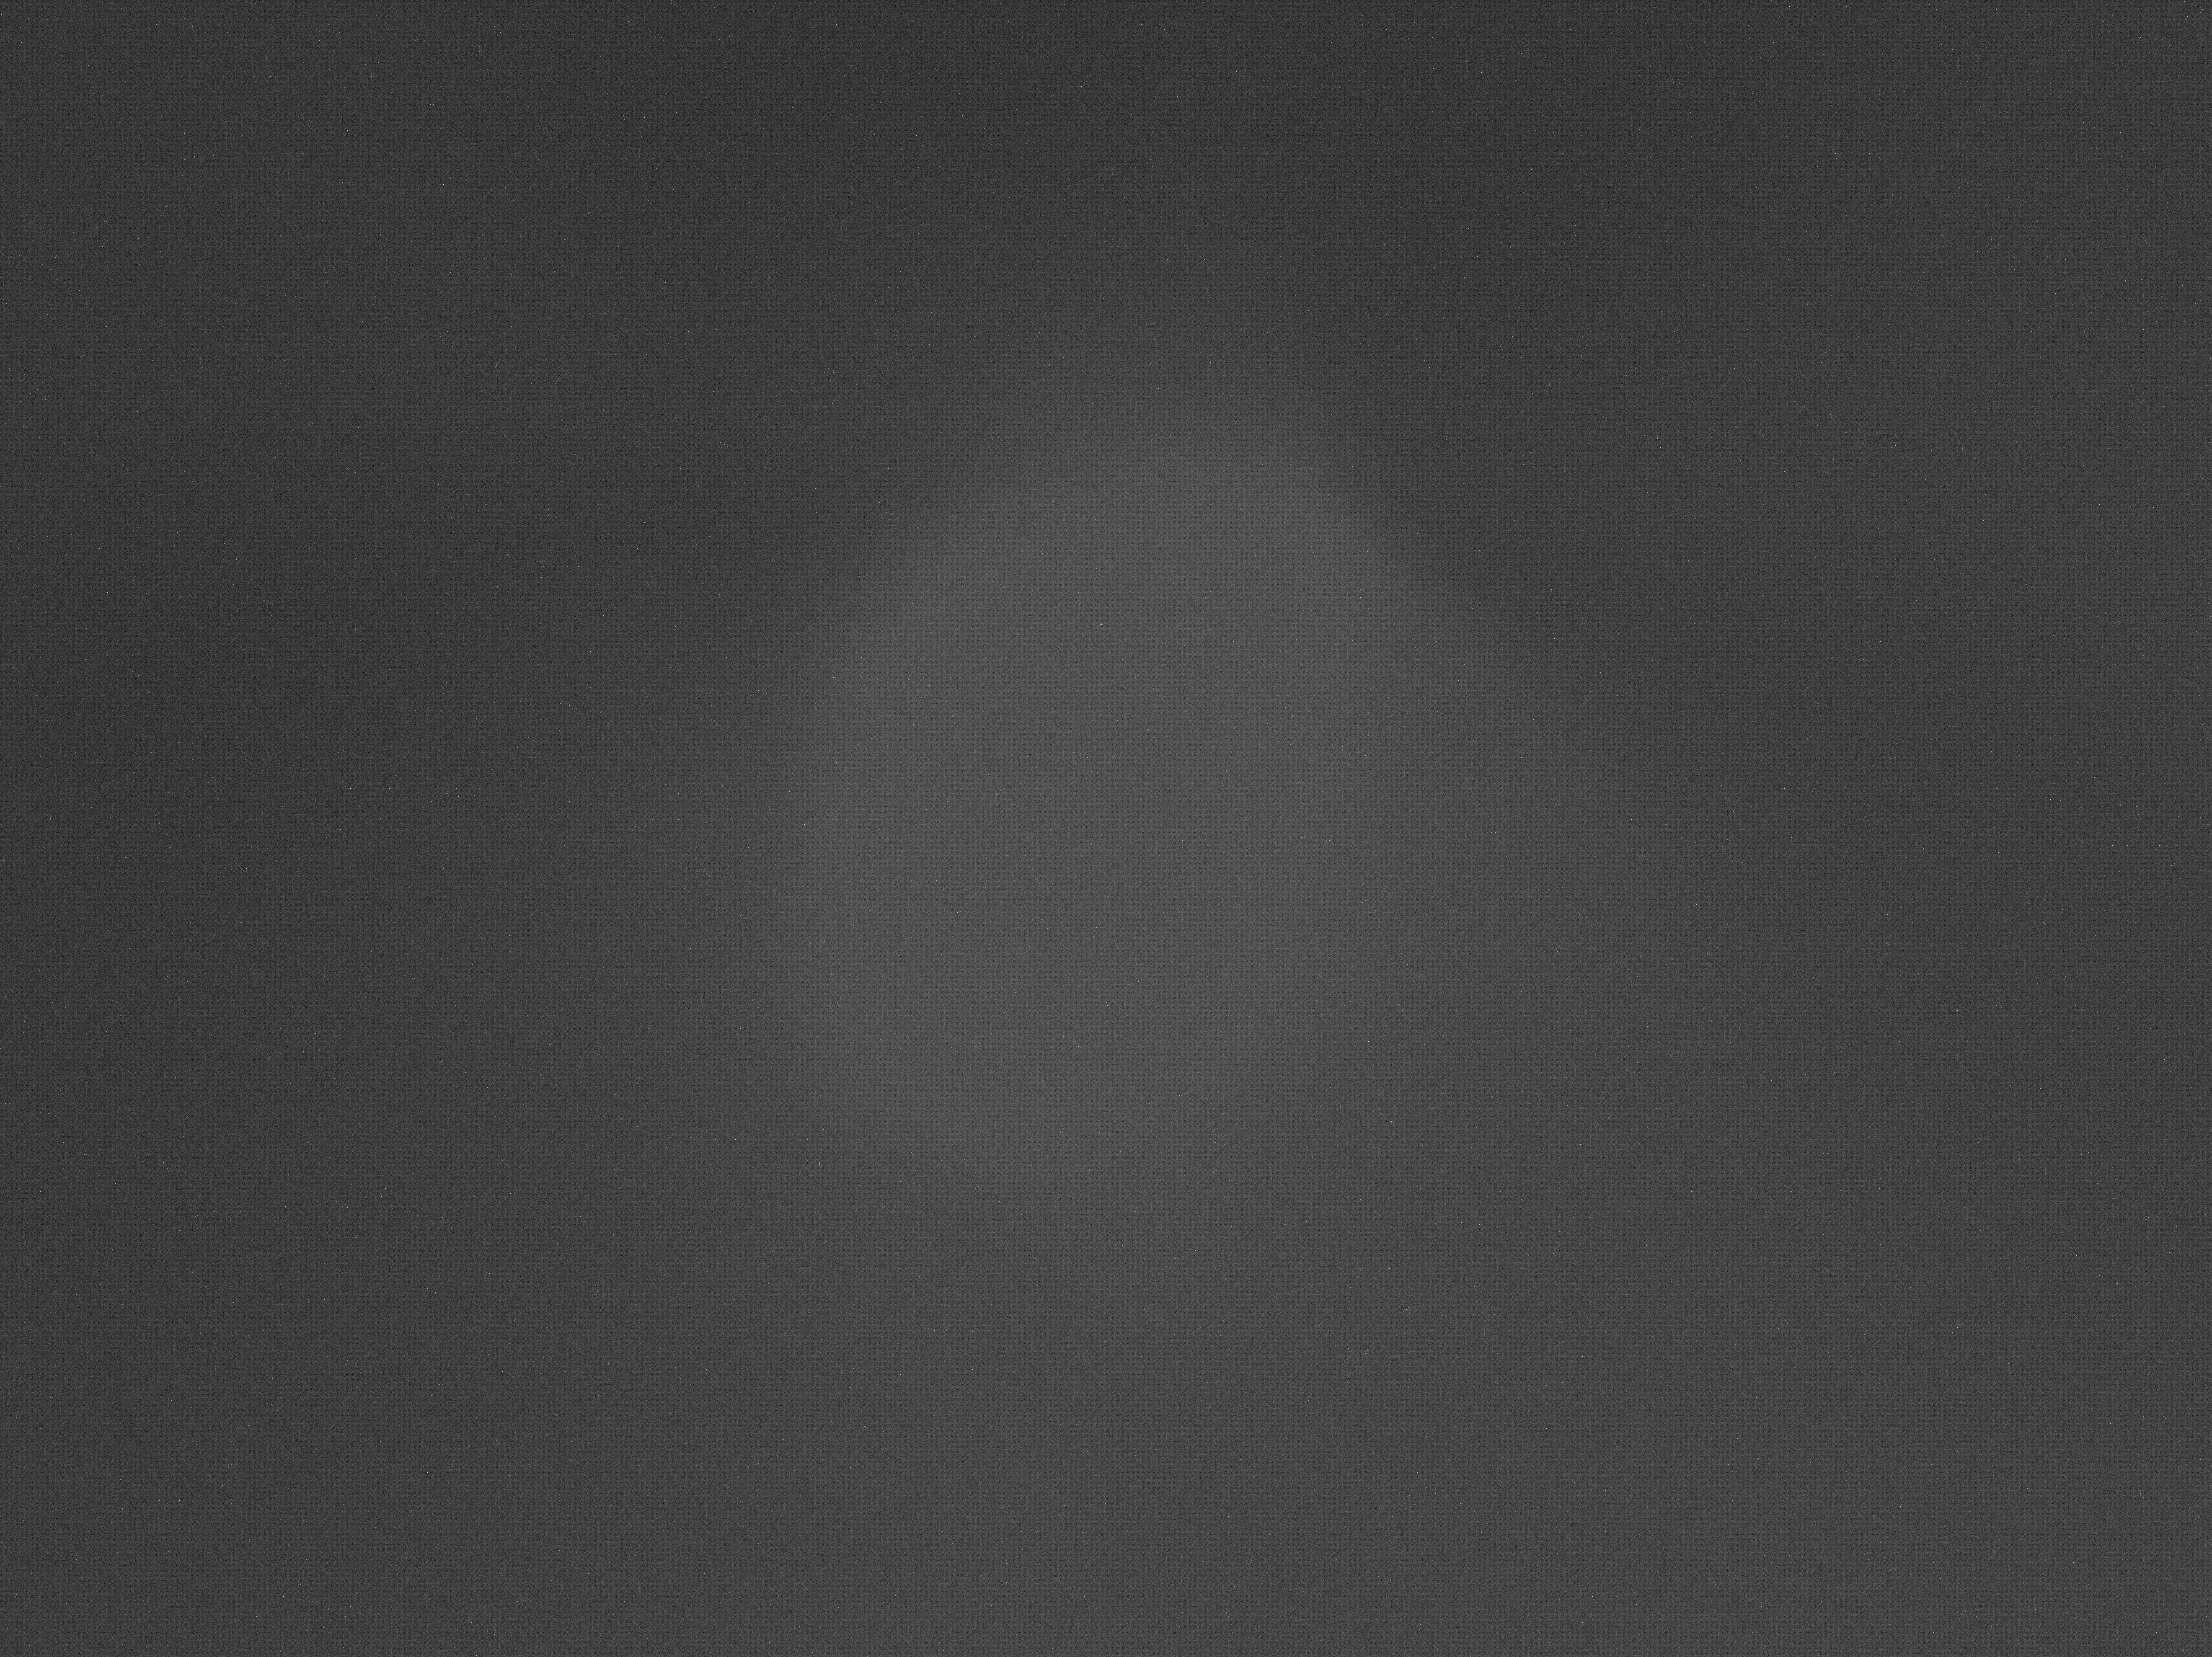 Dark_LED#2_-9.90_300.00s.jpg